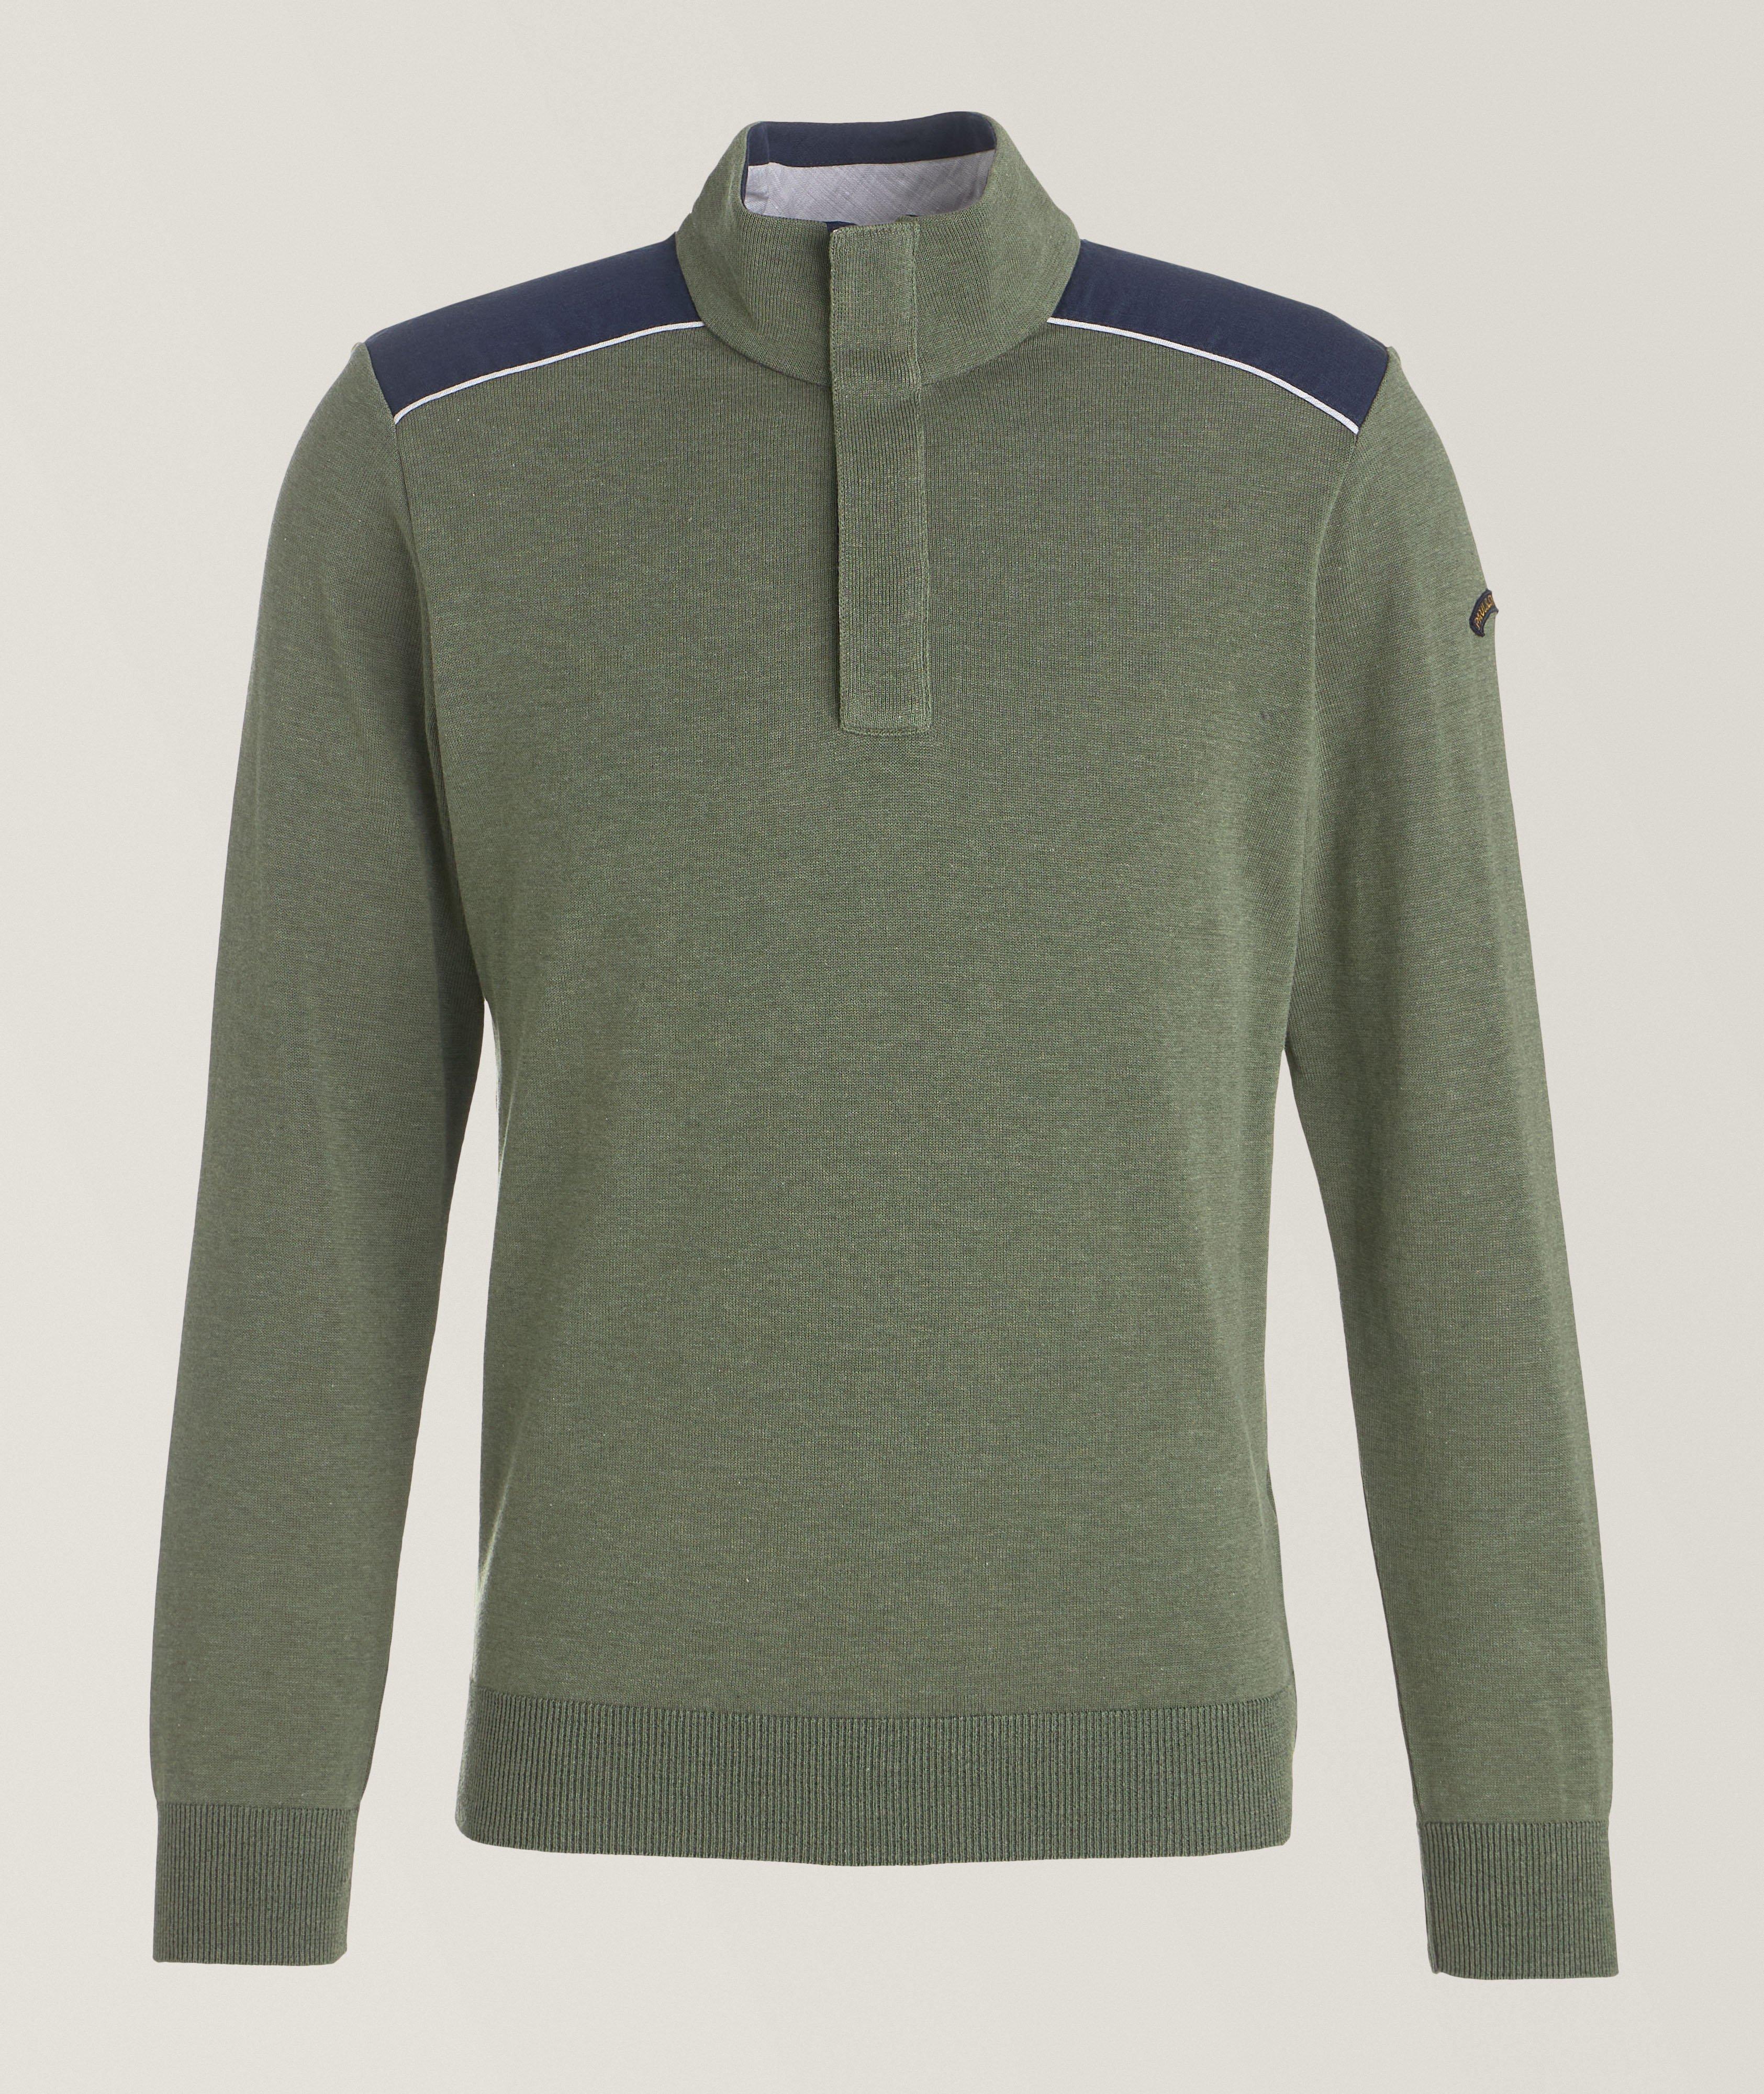 Contrast Shoulders Quarter-Zip Sweater image 0